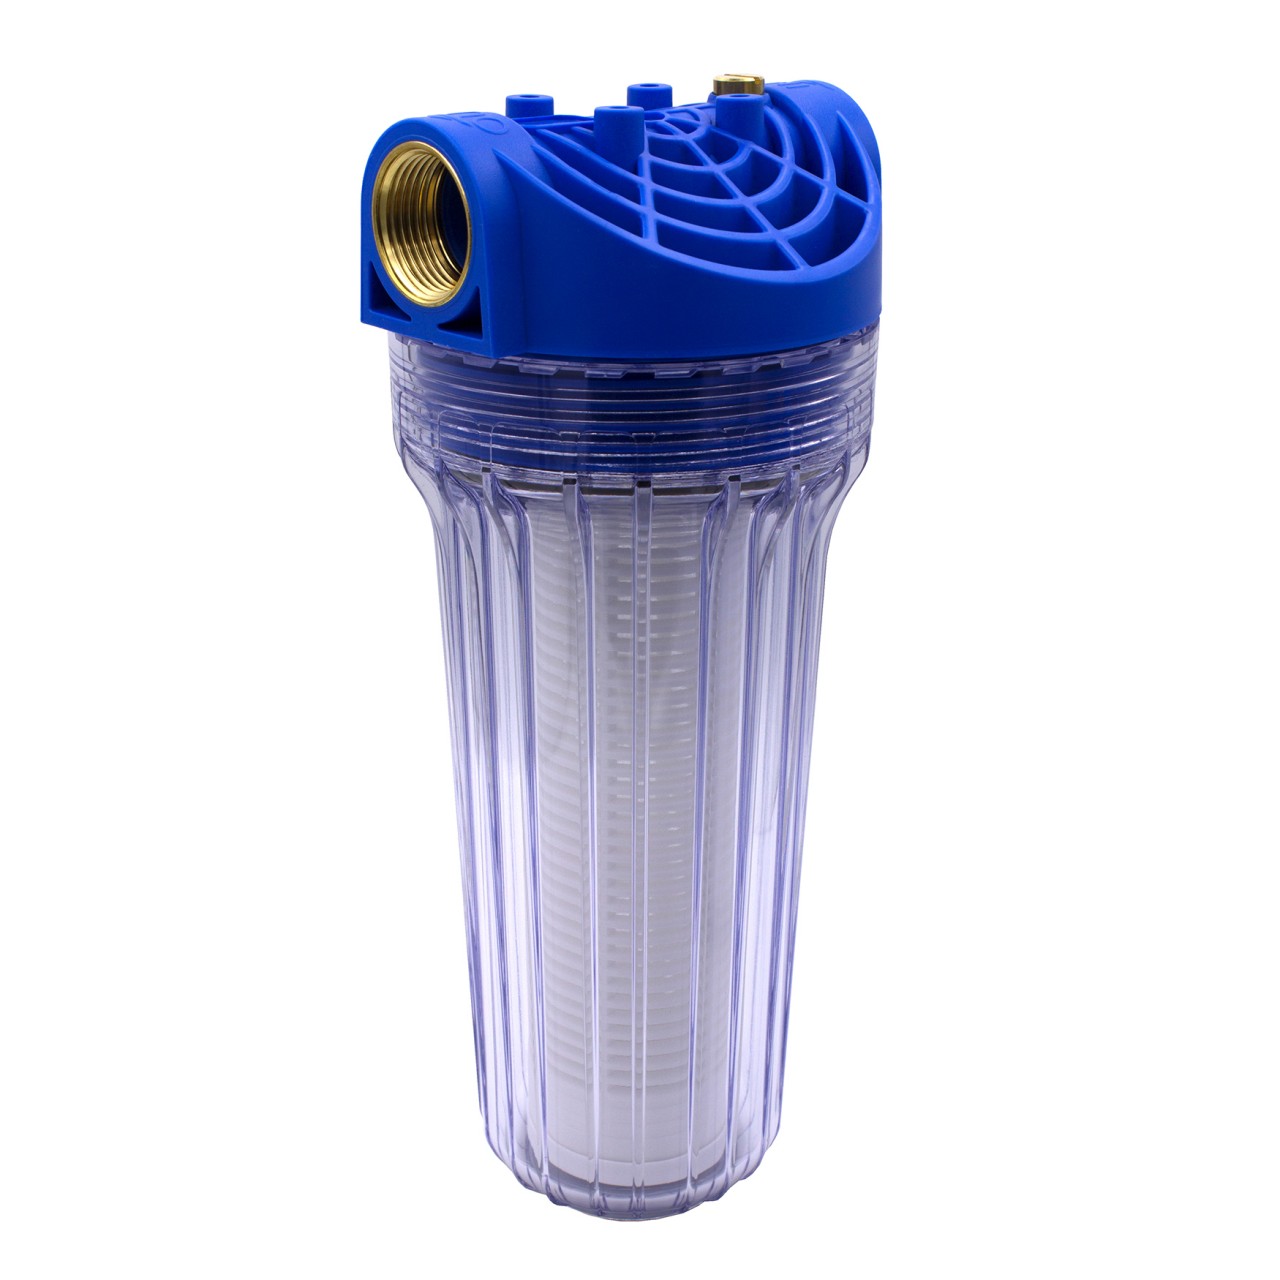 VARIOSAN Wasserfilter inkl. Adapter 15648, 3/4, für Hochdruckreiniger,  Pumpe oder Wohnmobil, passend u.a. zu Kärcher 4.730-059.0